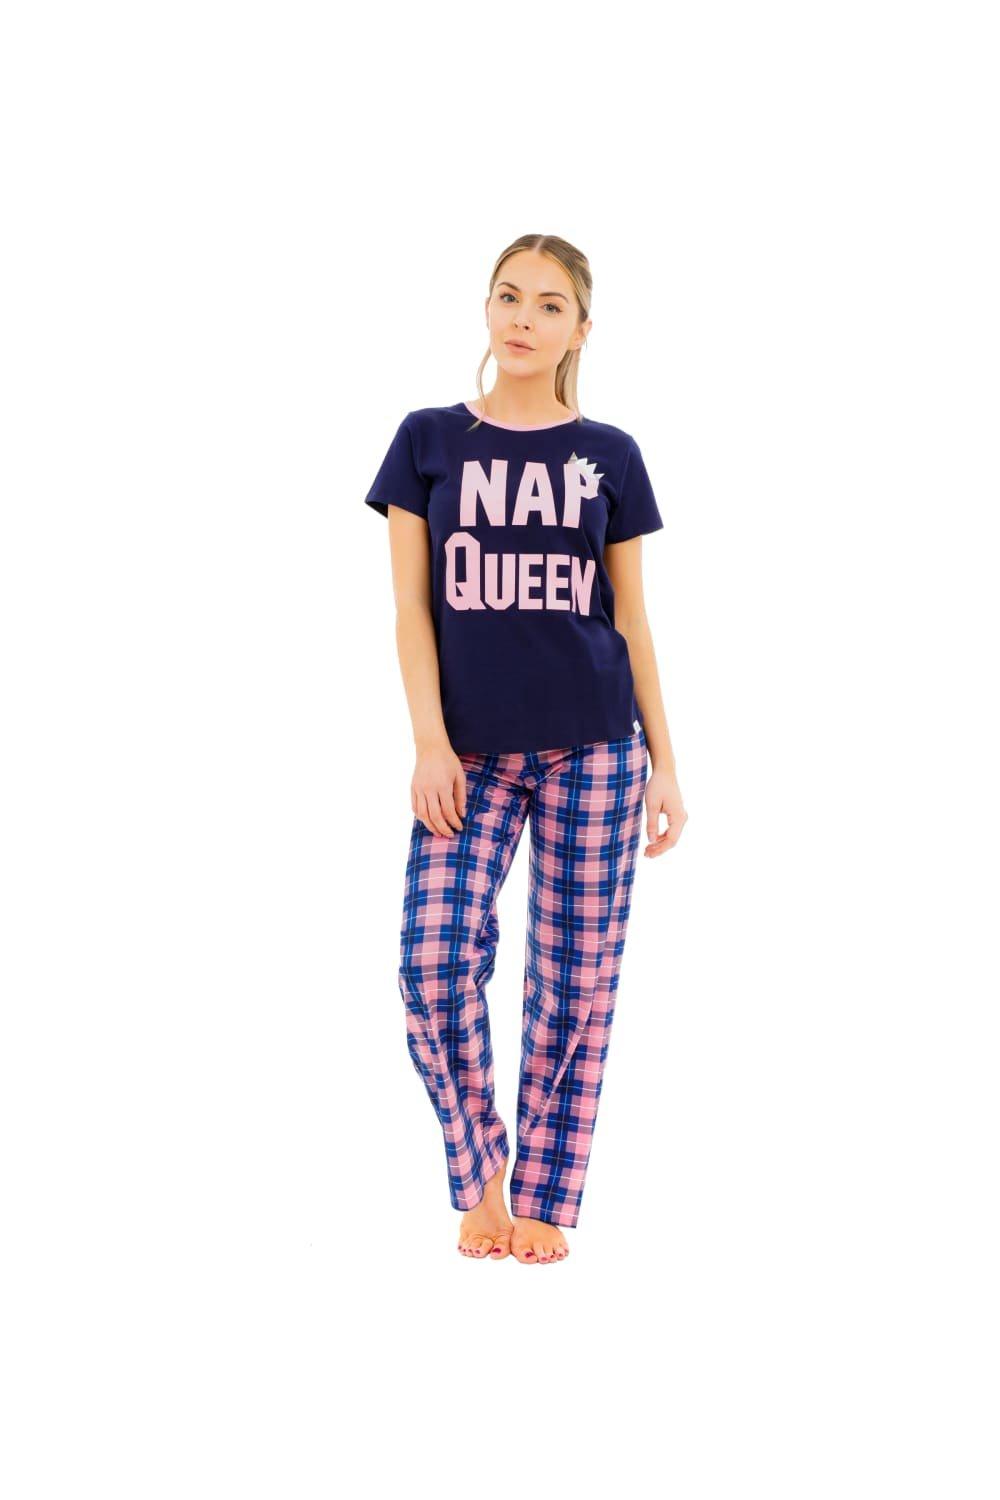 Nap Queen Pyjamas